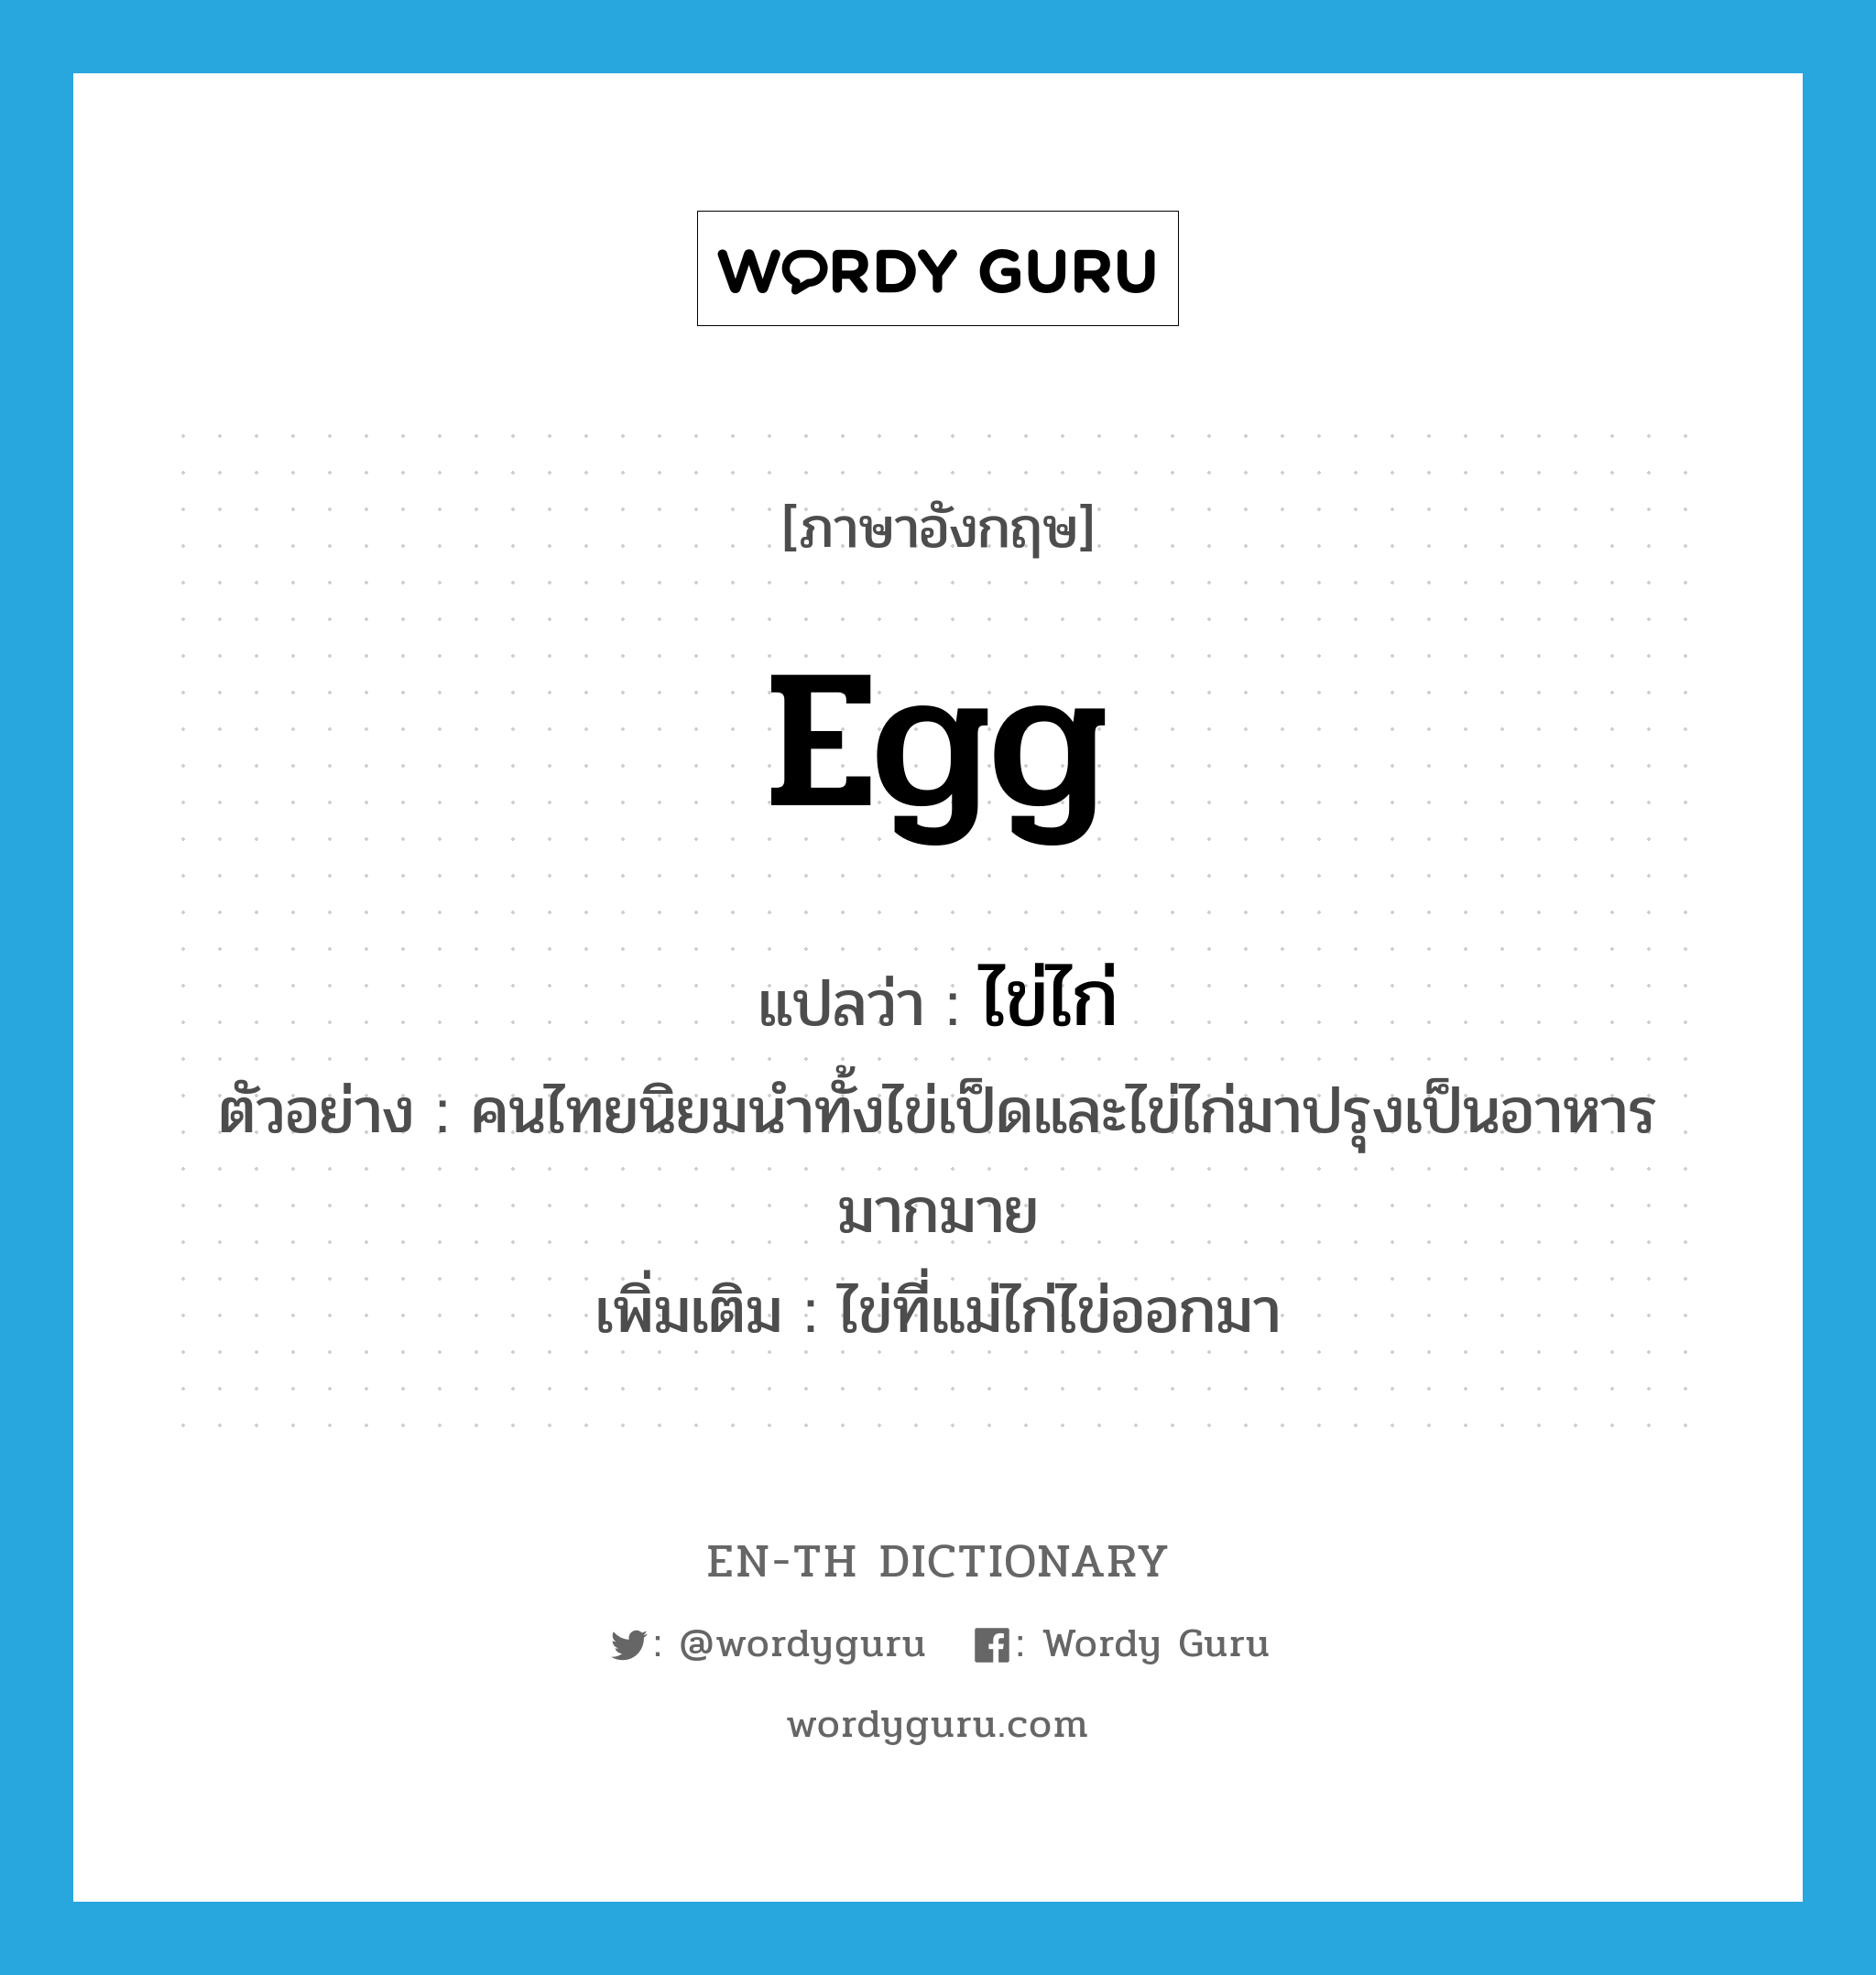 ไข่ไก่ ภาษาอังกฤษ?, คำศัพท์ภาษาอังกฤษ ไข่ไก่ แปลว่า egg ประเภท N ตัวอย่าง คนไทยนิยมนำทั้งไข่เป็ดและไข่ไก่มาปรุงเป็นอาหารมากมาย เพิ่มเติม ไข่ที่แม่ไก่ไข่ออกมา หมวด N